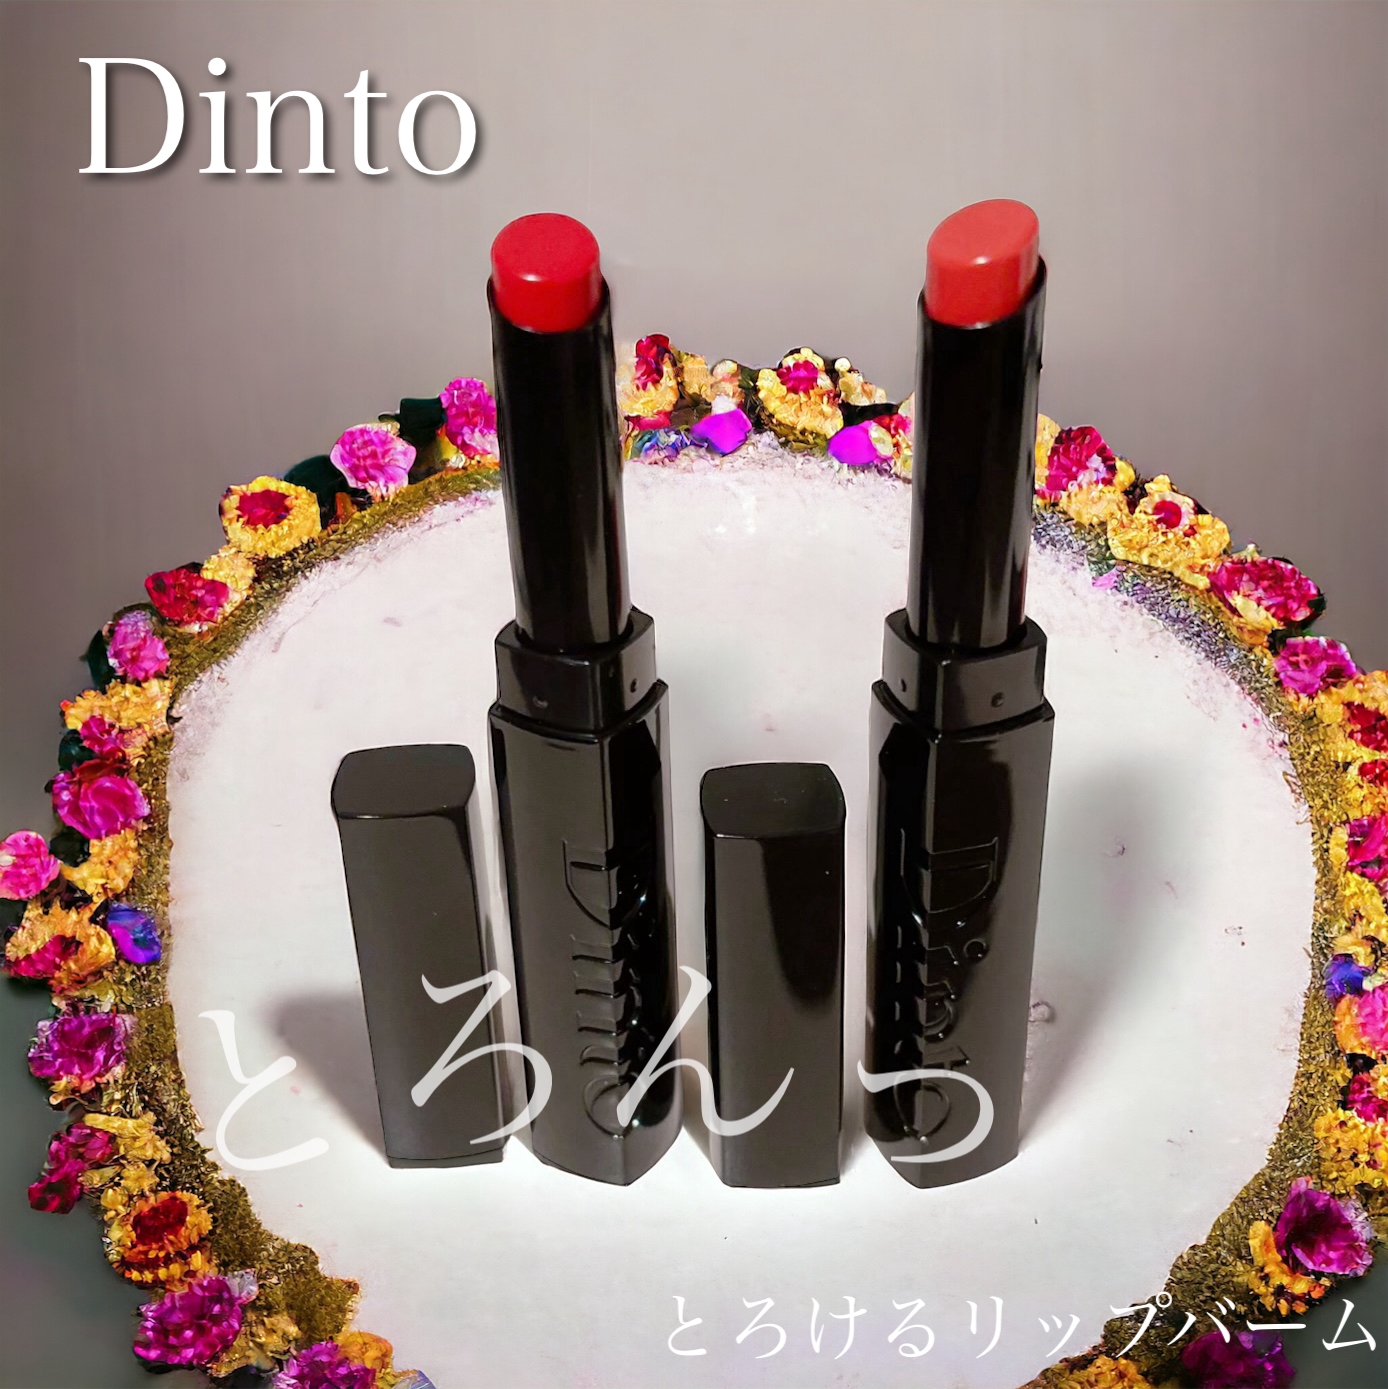 Dinto(ディーント) メルティンググロウリップバームの良い点・メリットに関するふっきーさんの口コミ画像1